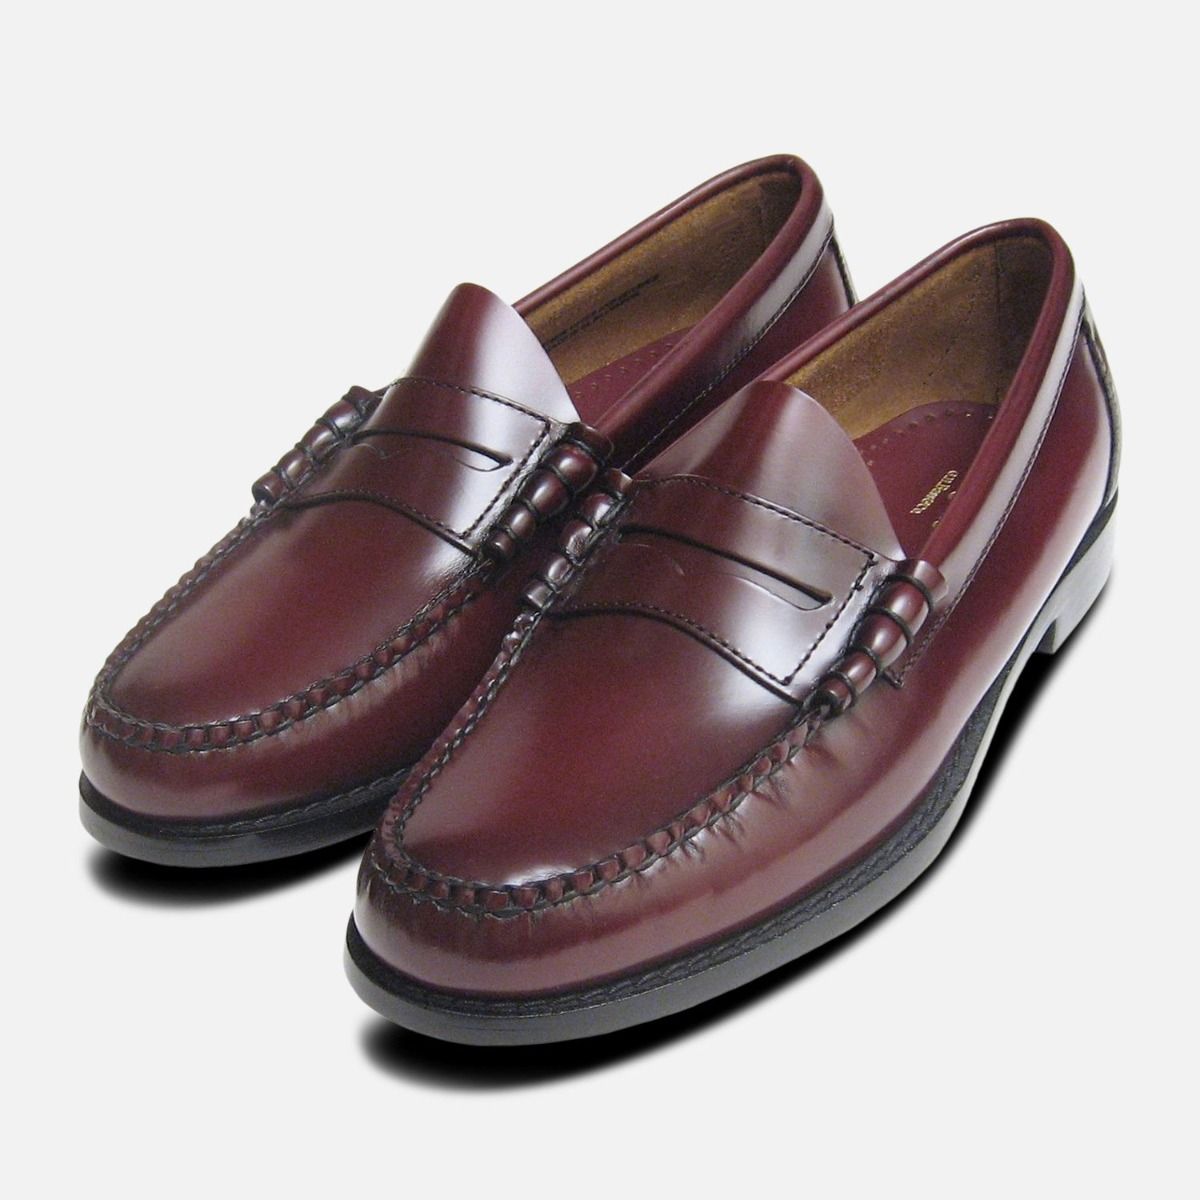 mens burgundy slip on shoes